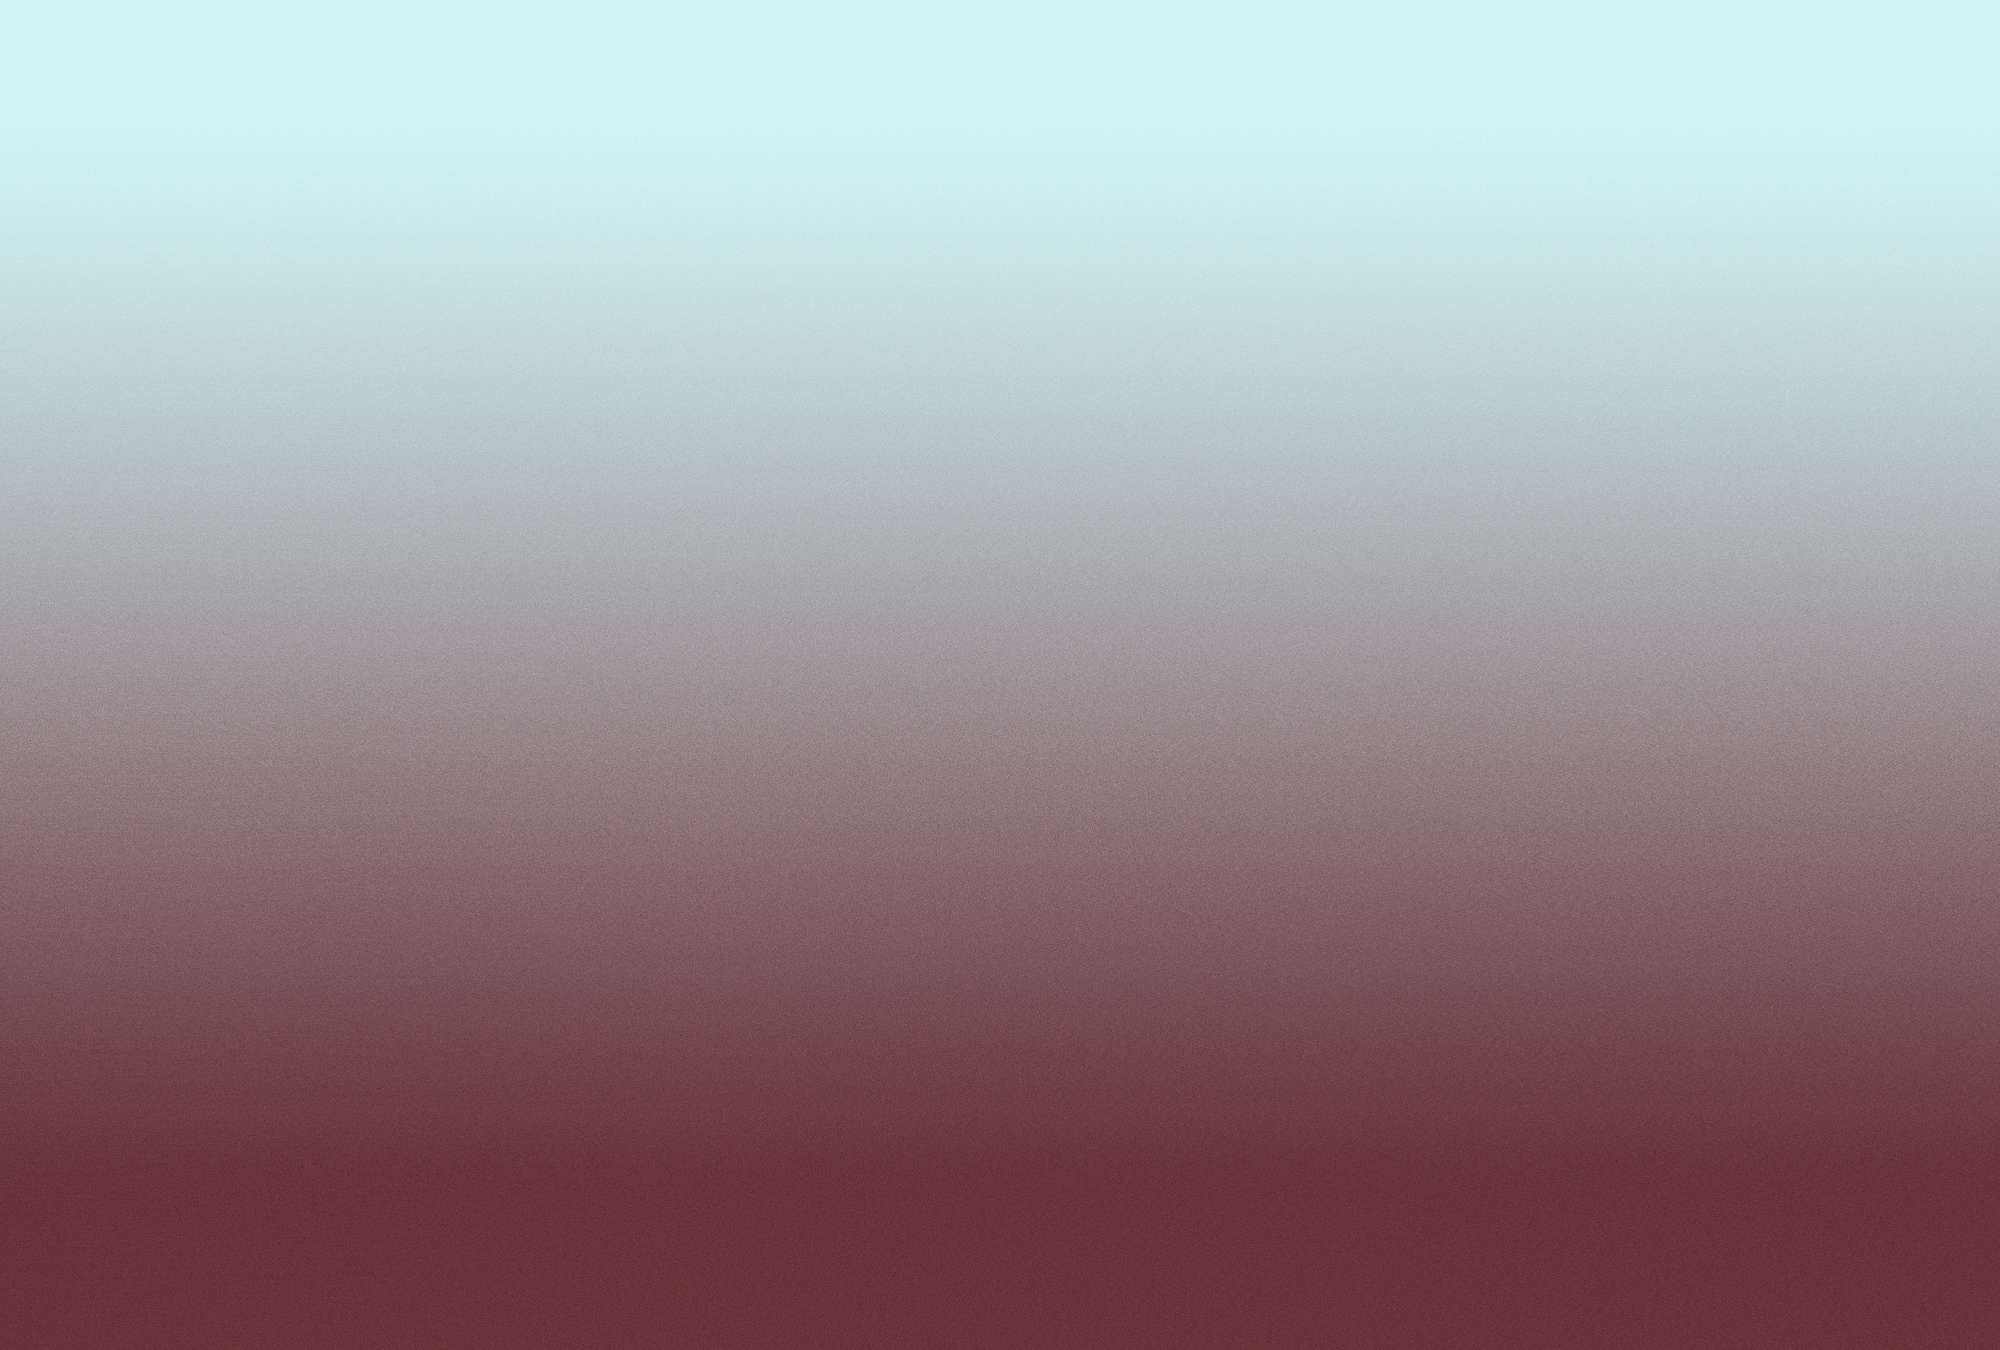             Colour Studio 3 - Papel pintado fotográfico ombre azul claro y rojo vino con degradado
        